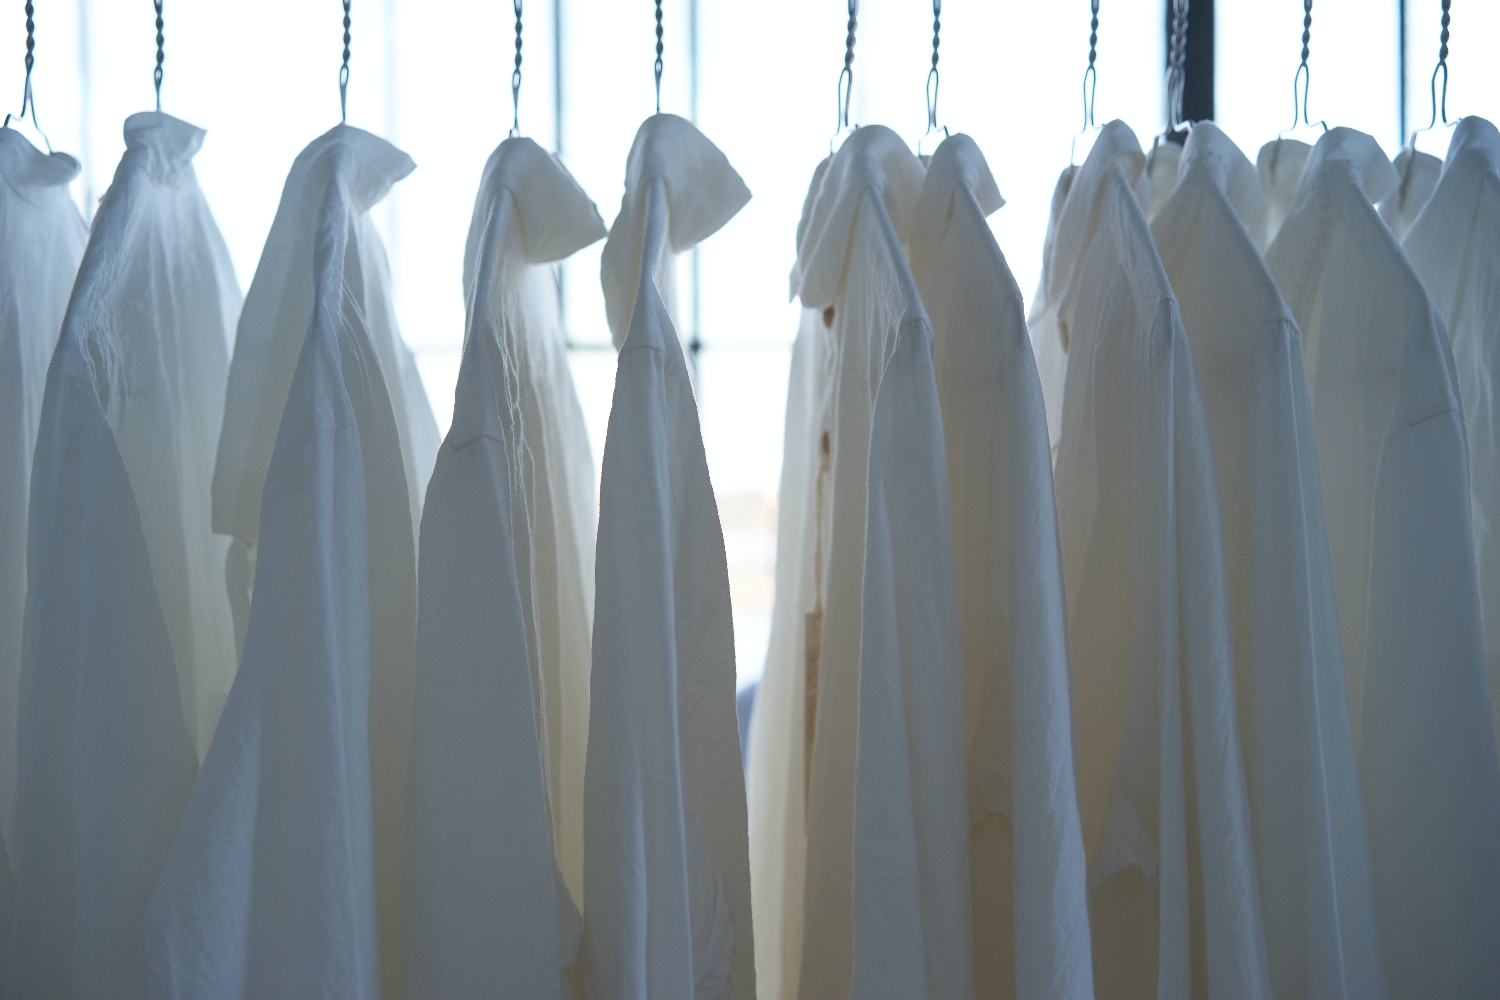 Leží vám doma obyčejná bíla košile? Zde jsou 3 způsoby, jak z ní udělat outfit jako z Instagramu